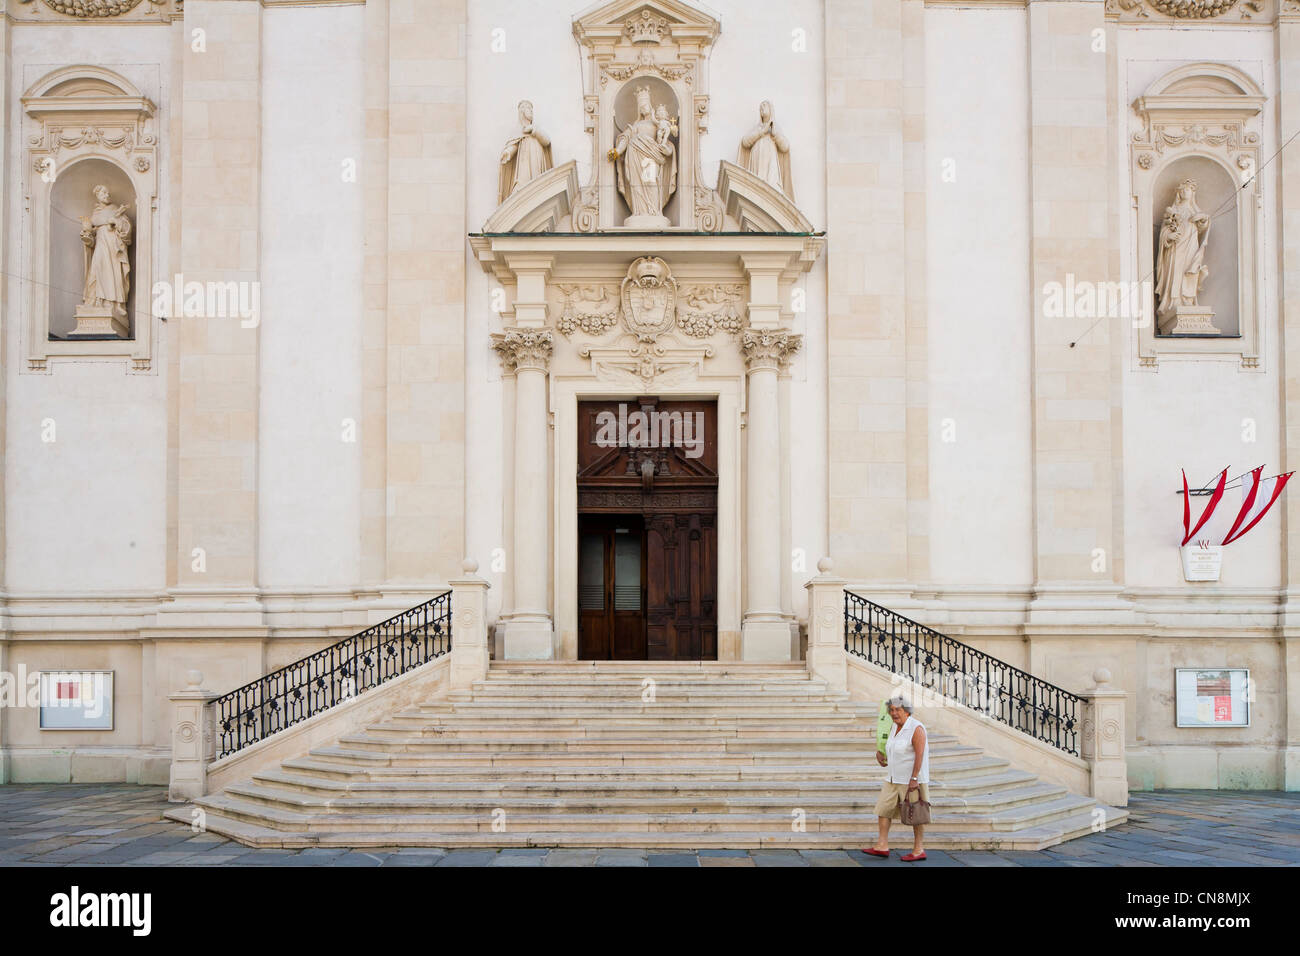 Austria, Vienna, centro storico sono classificati come patrimonio mondiale dall'UNESCO, la chiesa dei Domenicani (Dominikaner kirche), dall'architetto Foto Stock